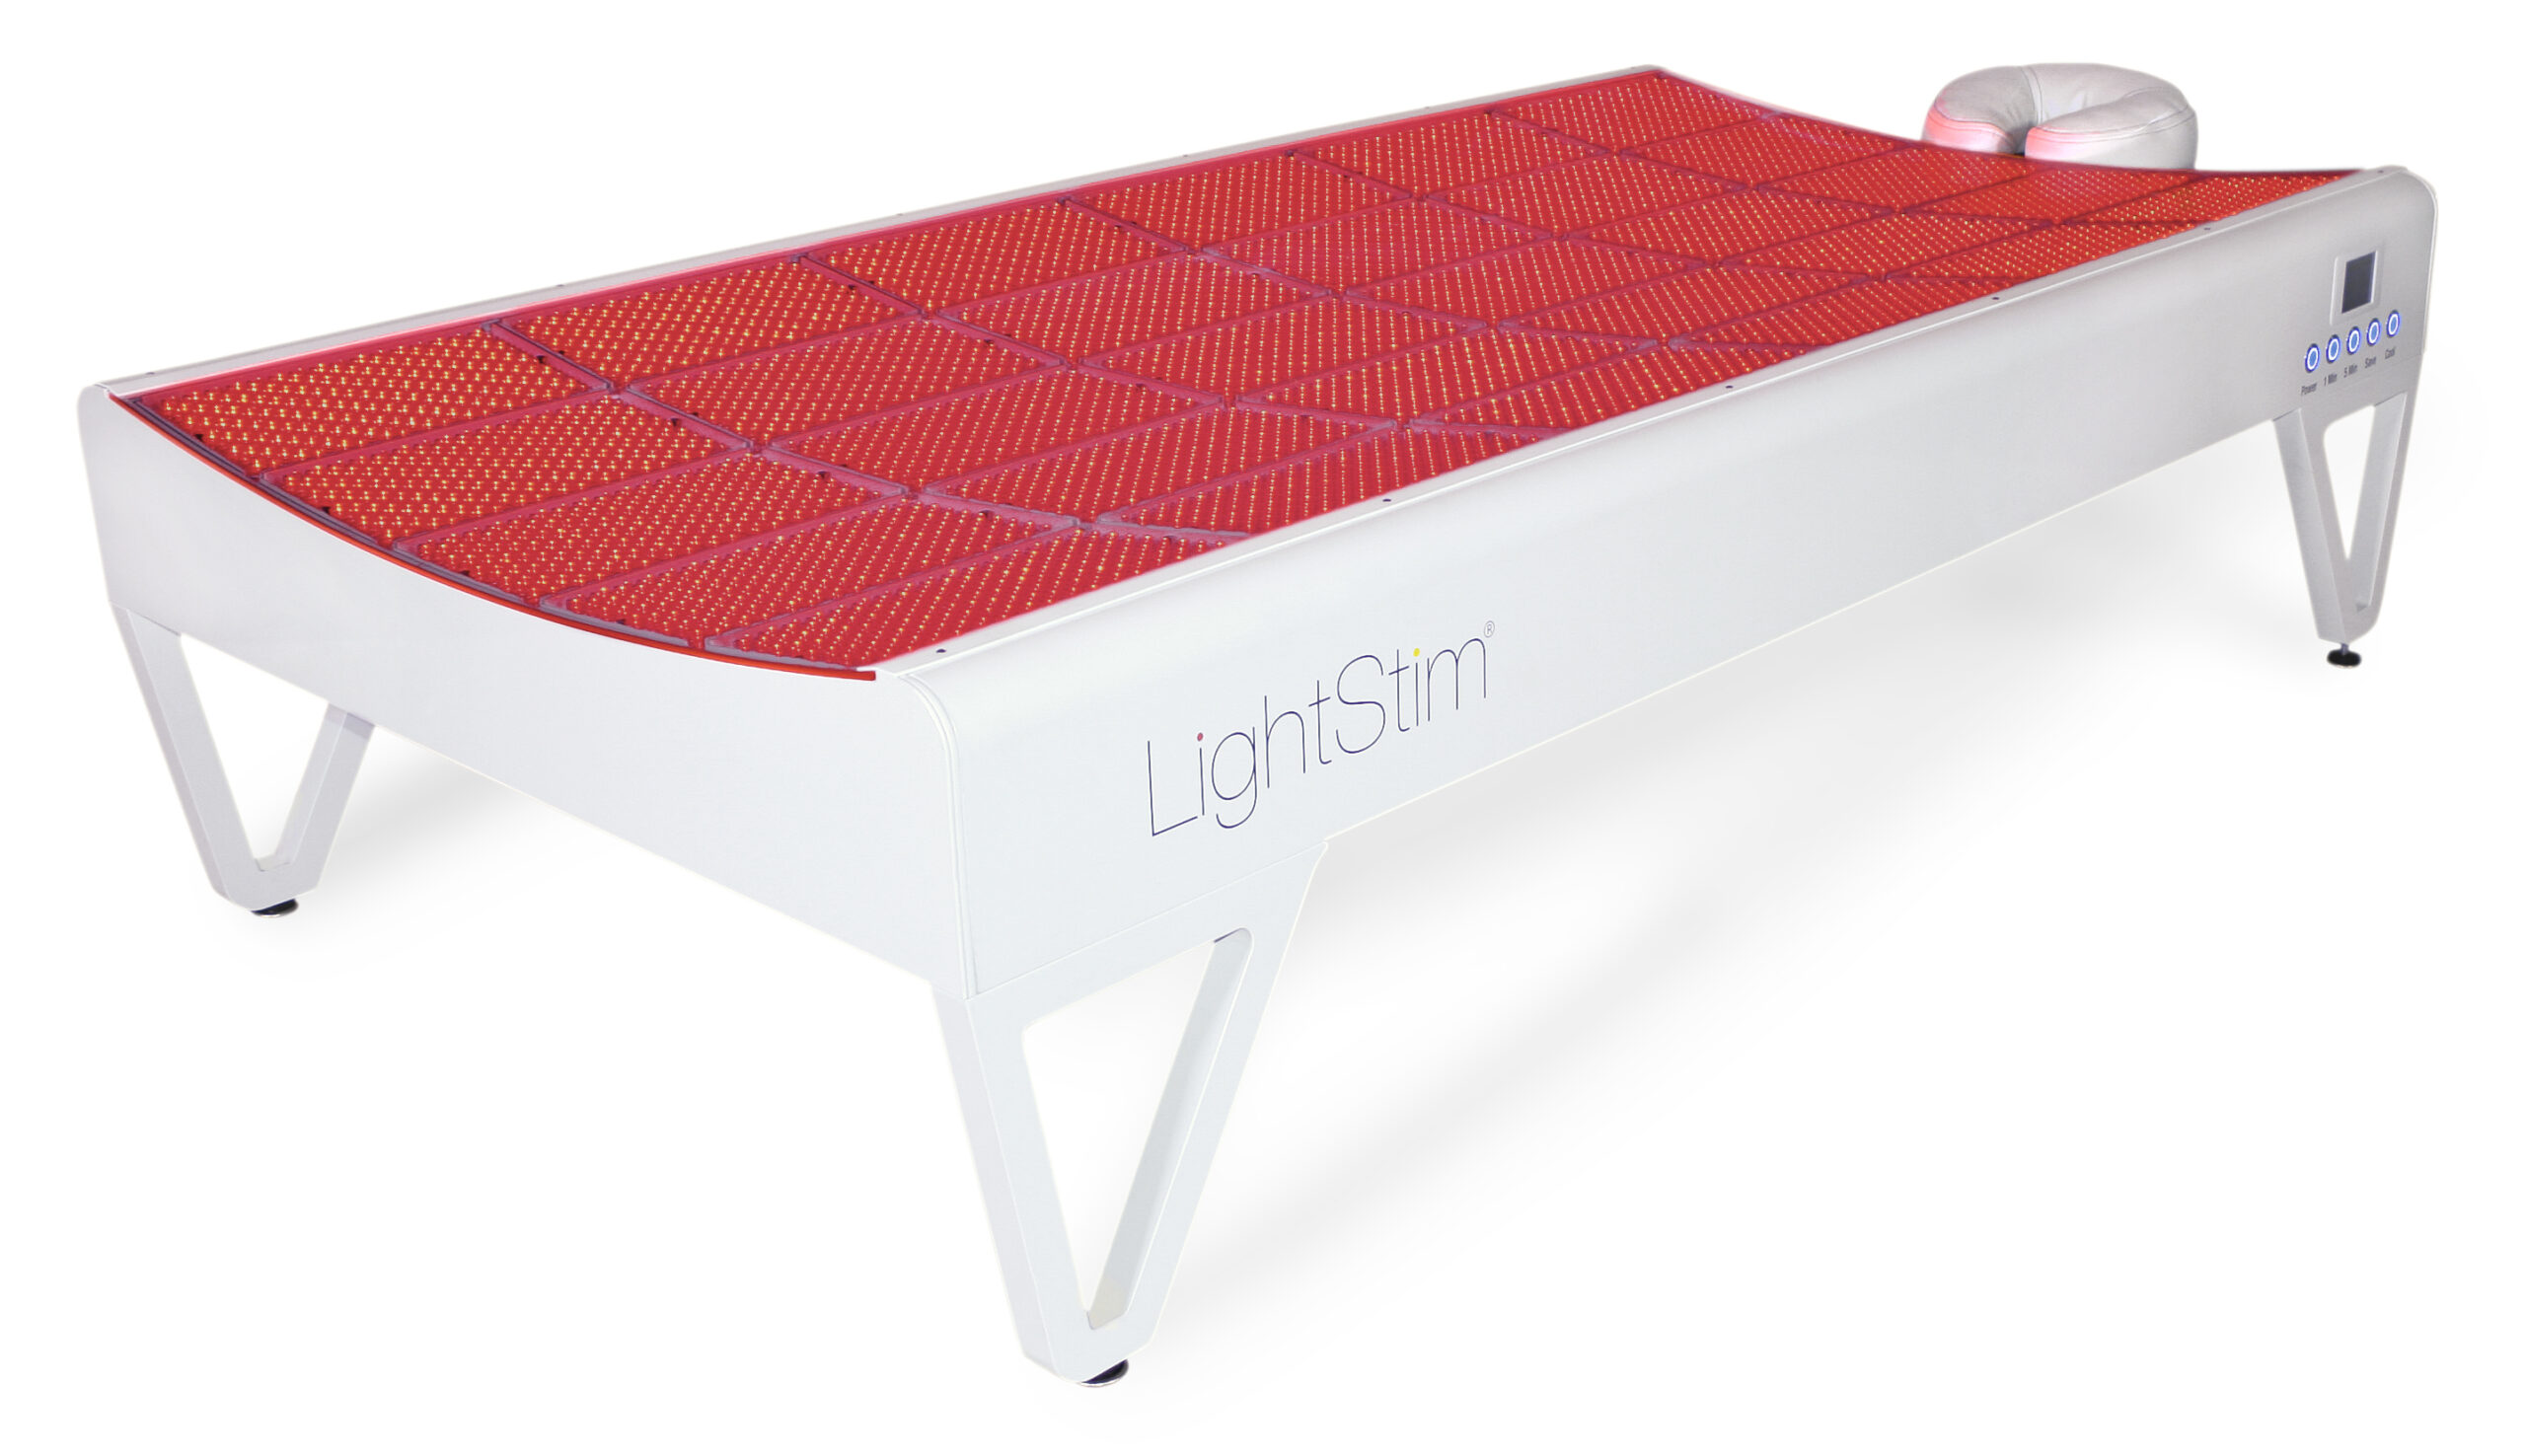 LightStim LED Bed